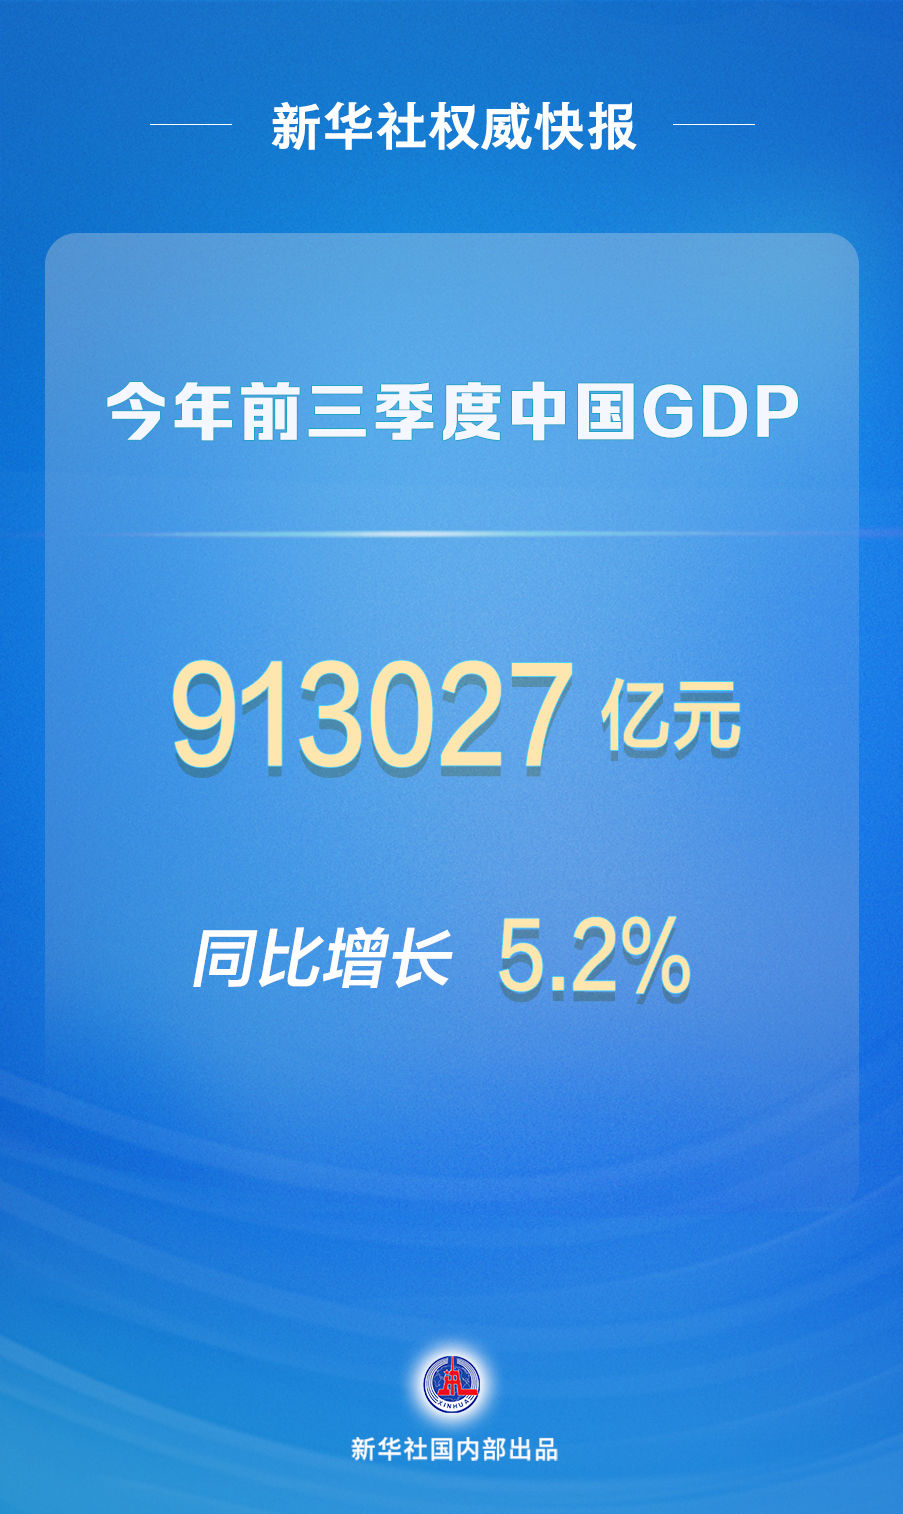 新华社权威快报|今年前三季度中国GDP同比增长5.2%